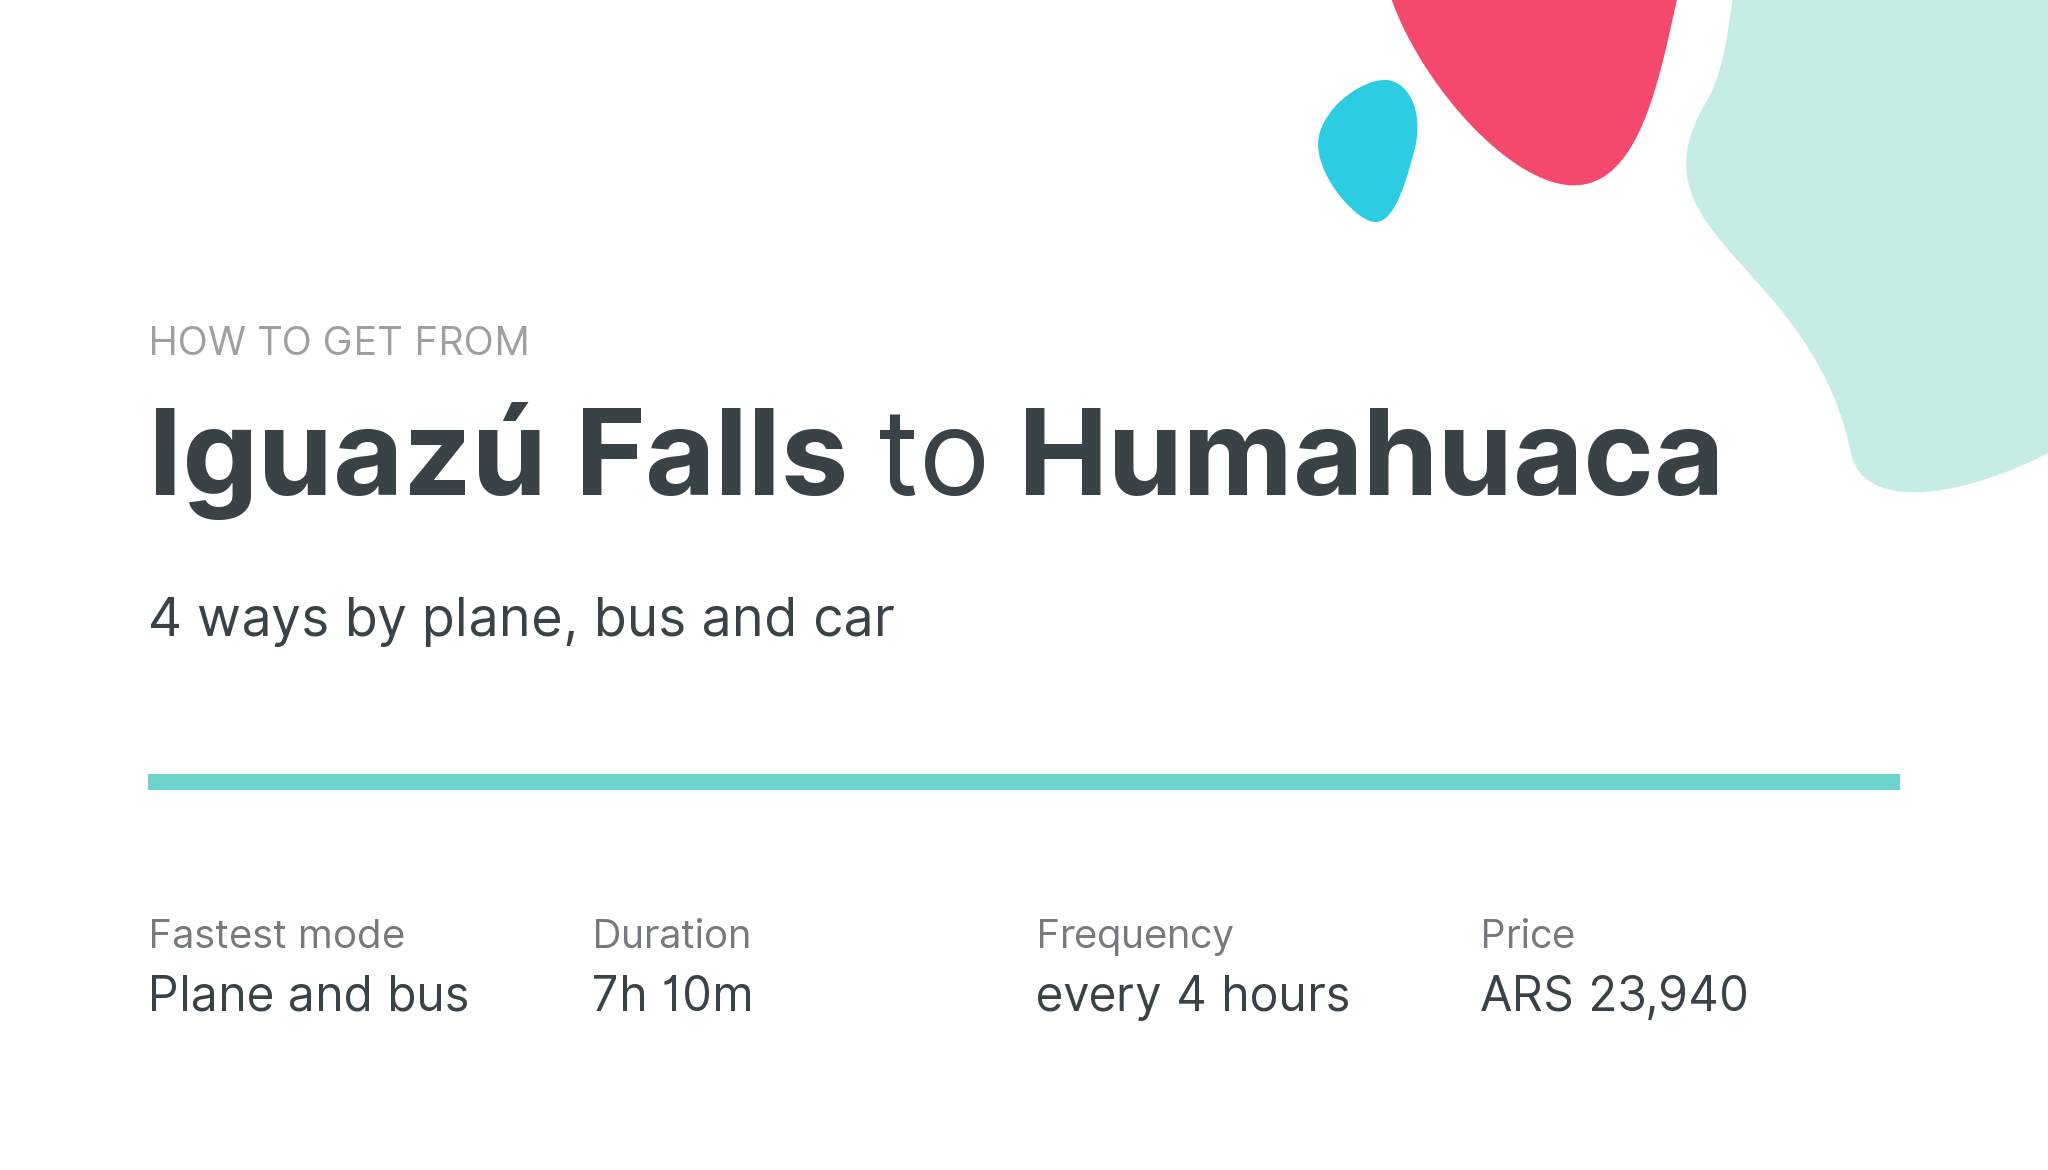 How do I get from Iguazú Falls to Humahuaca